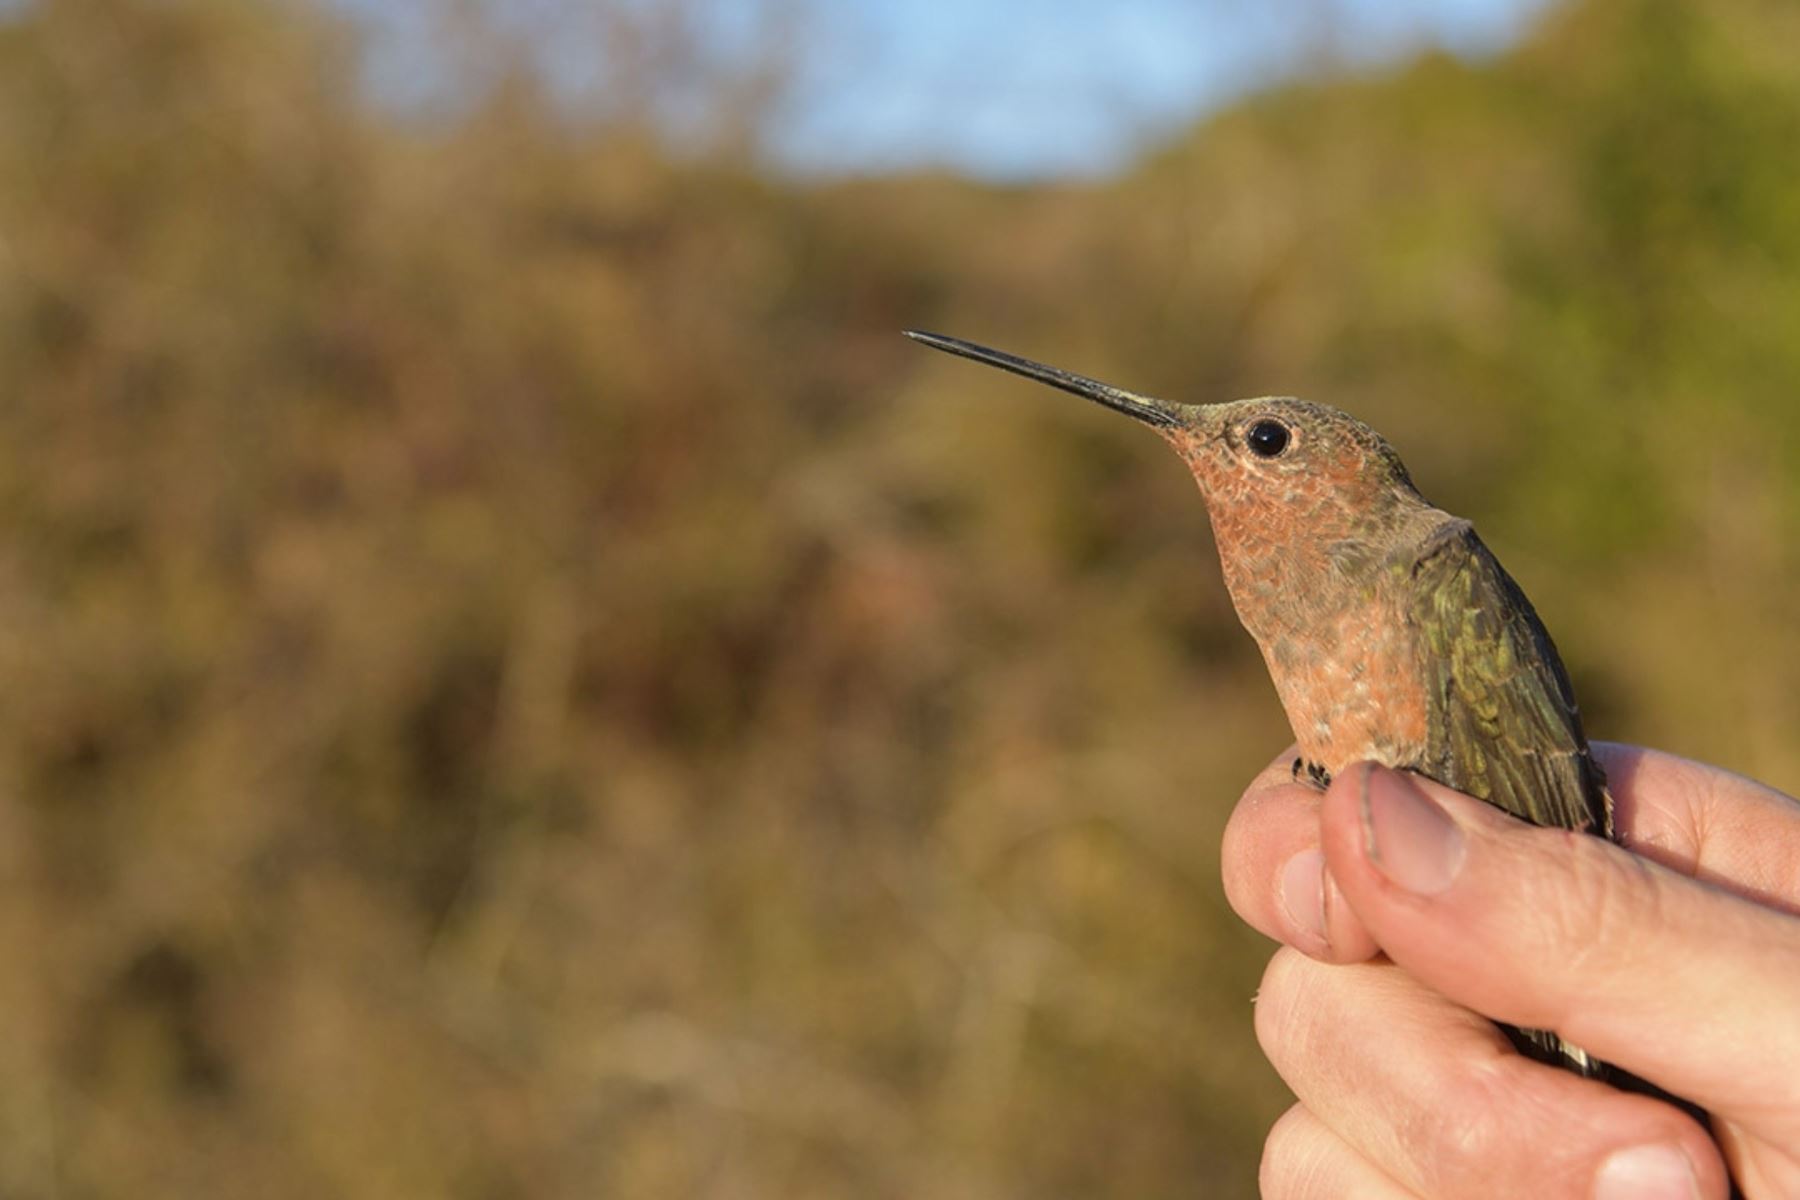 Investigadores de México, Chile y Perú descubrieron una nueva especie de colibrí gigante migratorio en los Andes peruanos. Foto: cortesía Universidad de Nuevo México (UNM)